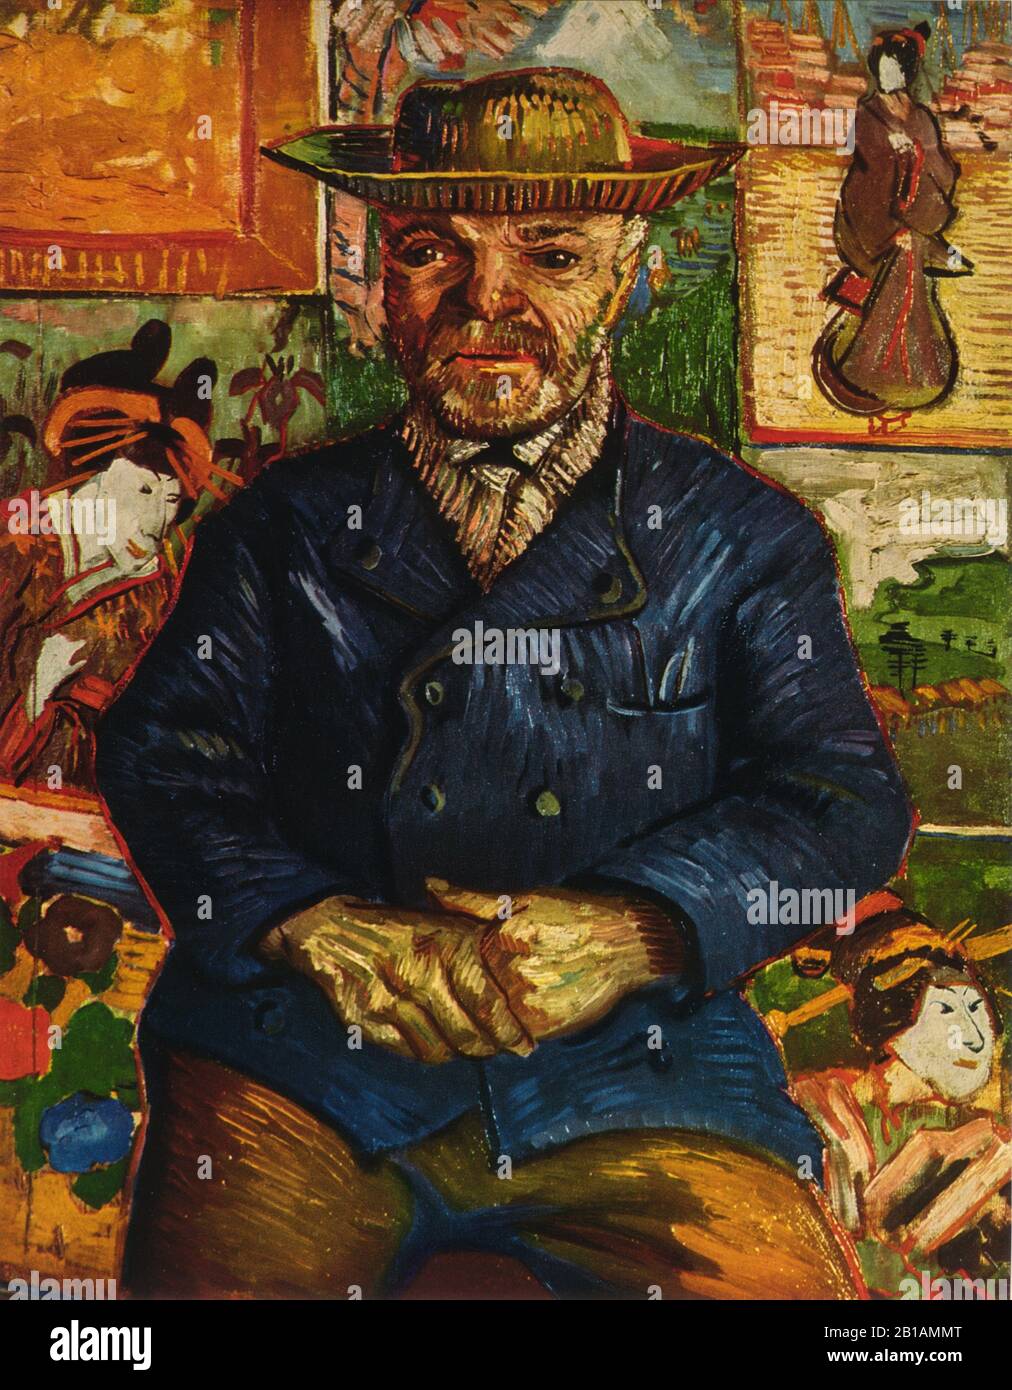 Pere Tanguy 1887 dipinto di Vincent van Gogh - Immagine Ad Altissima risoluzione e qualità Foto Stock